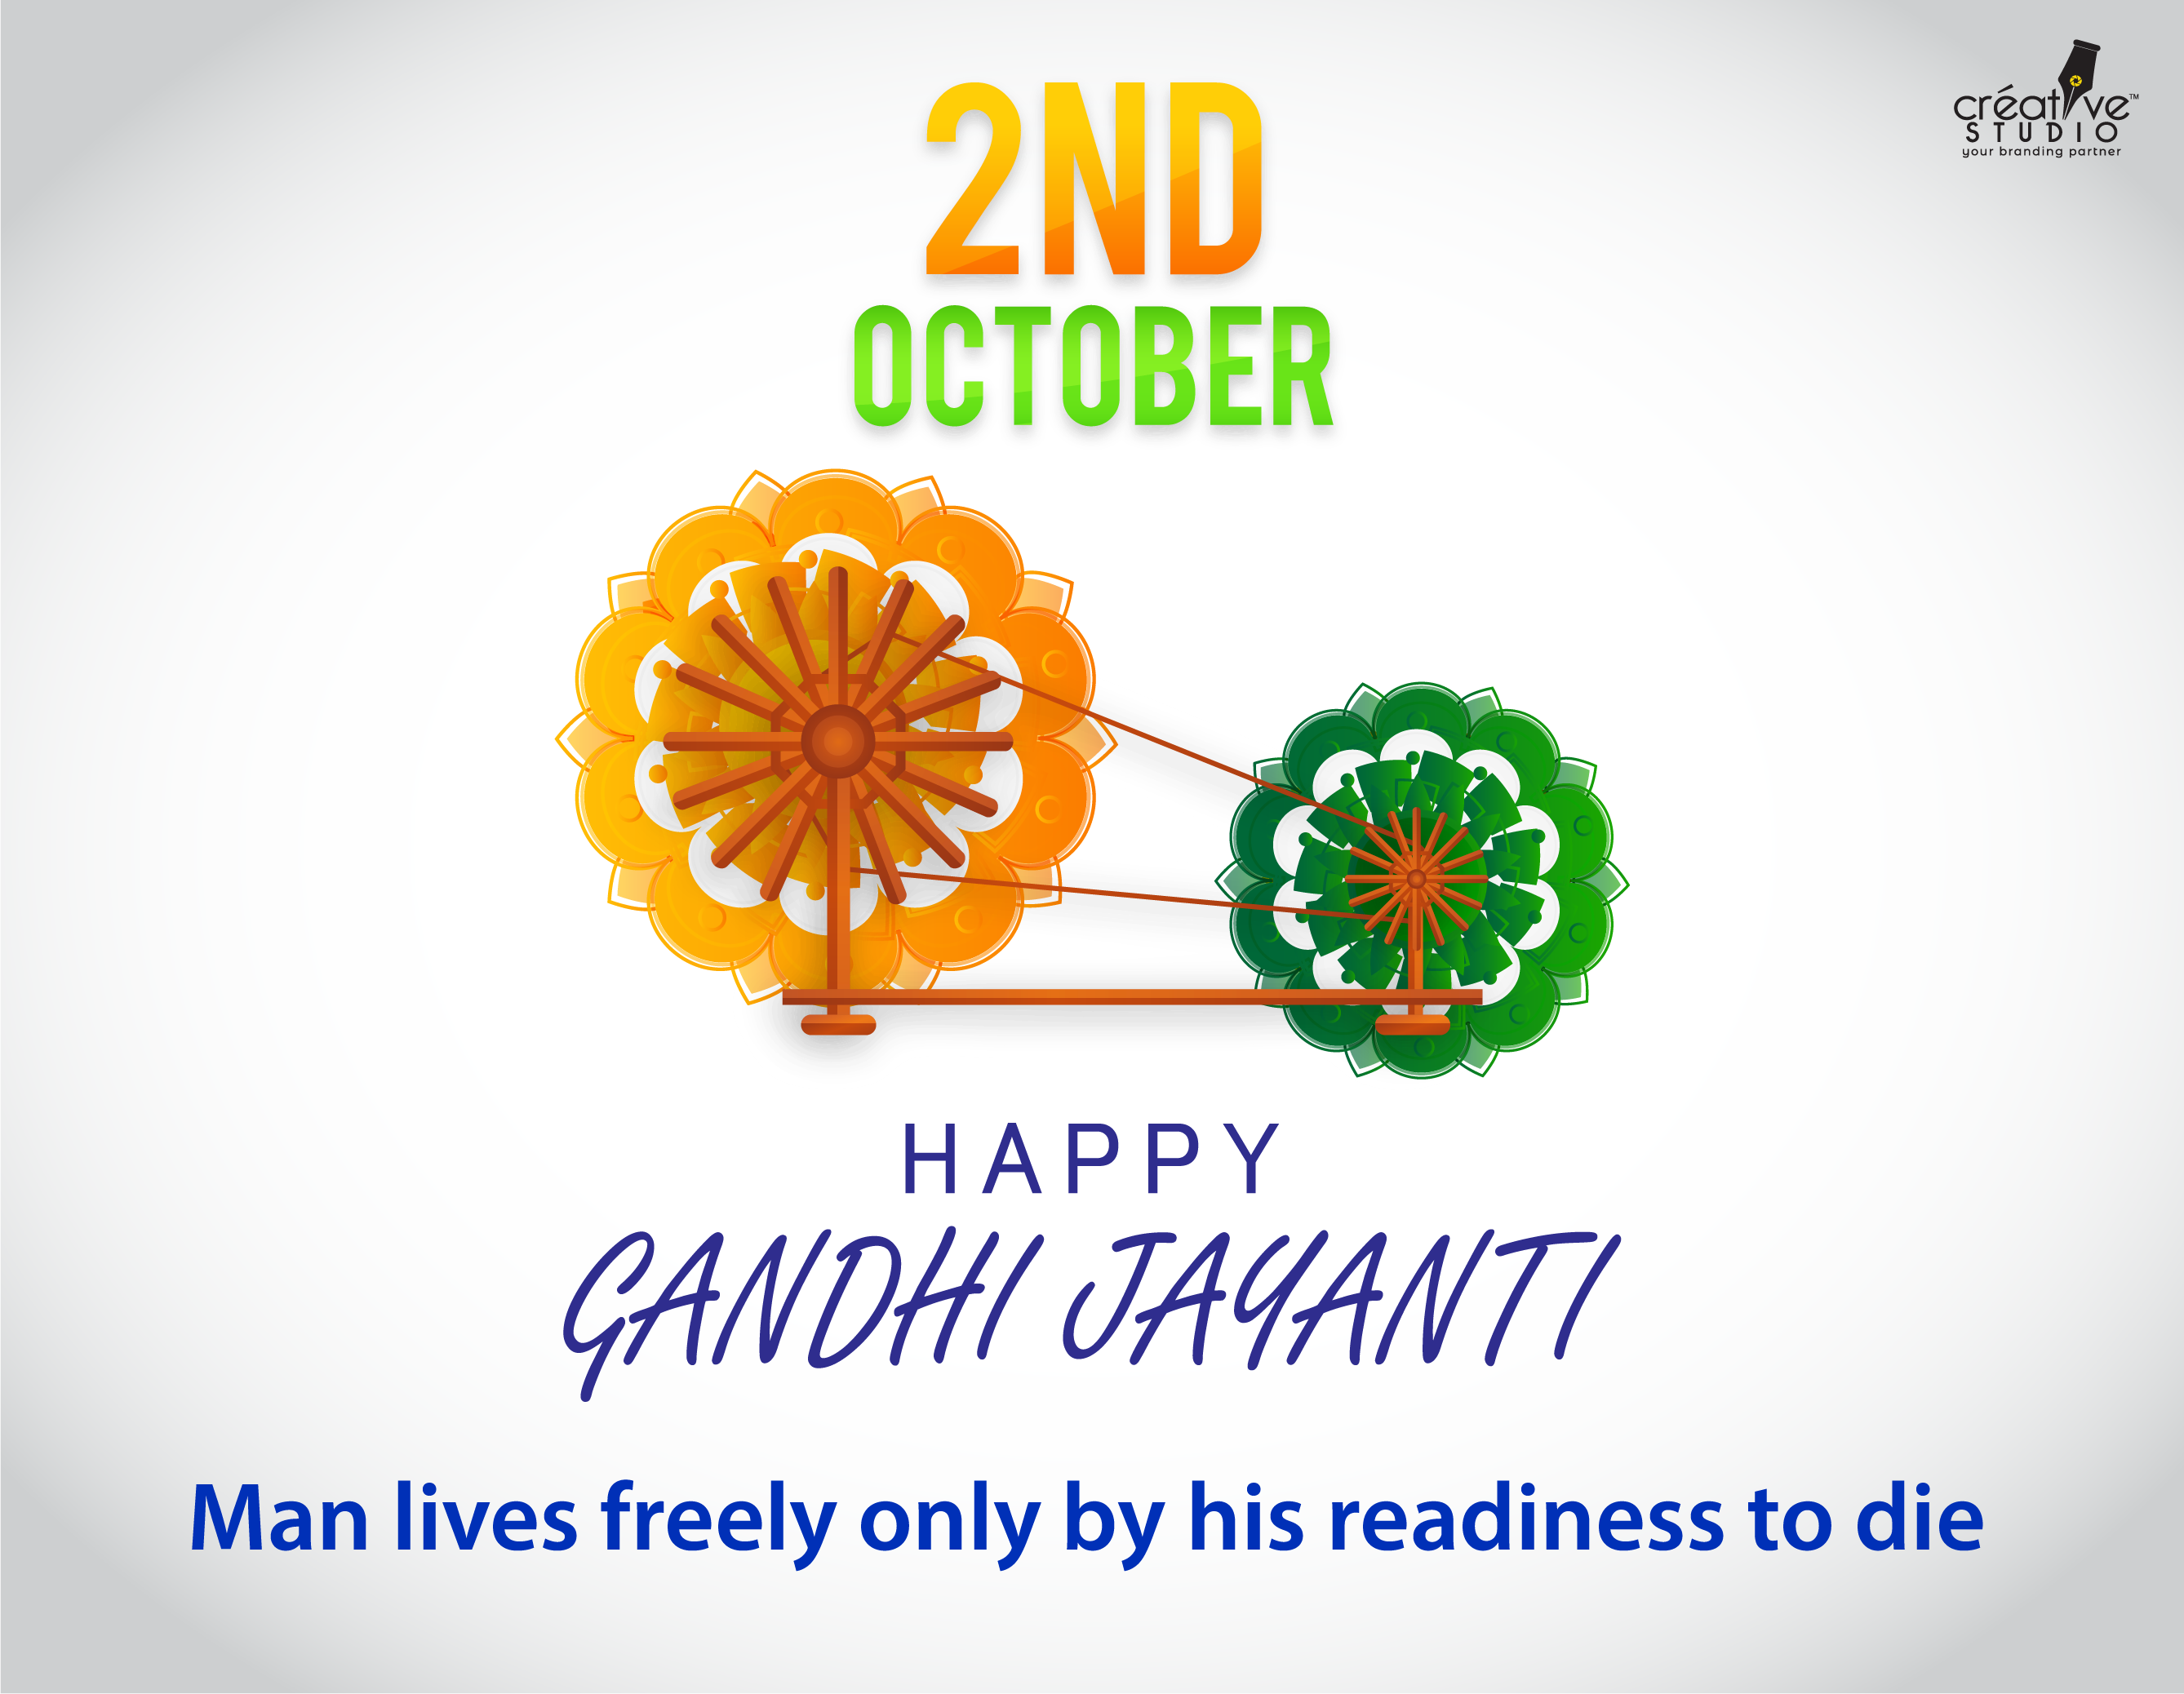 gandhi jayanti 04 - Gandhi Jayanti